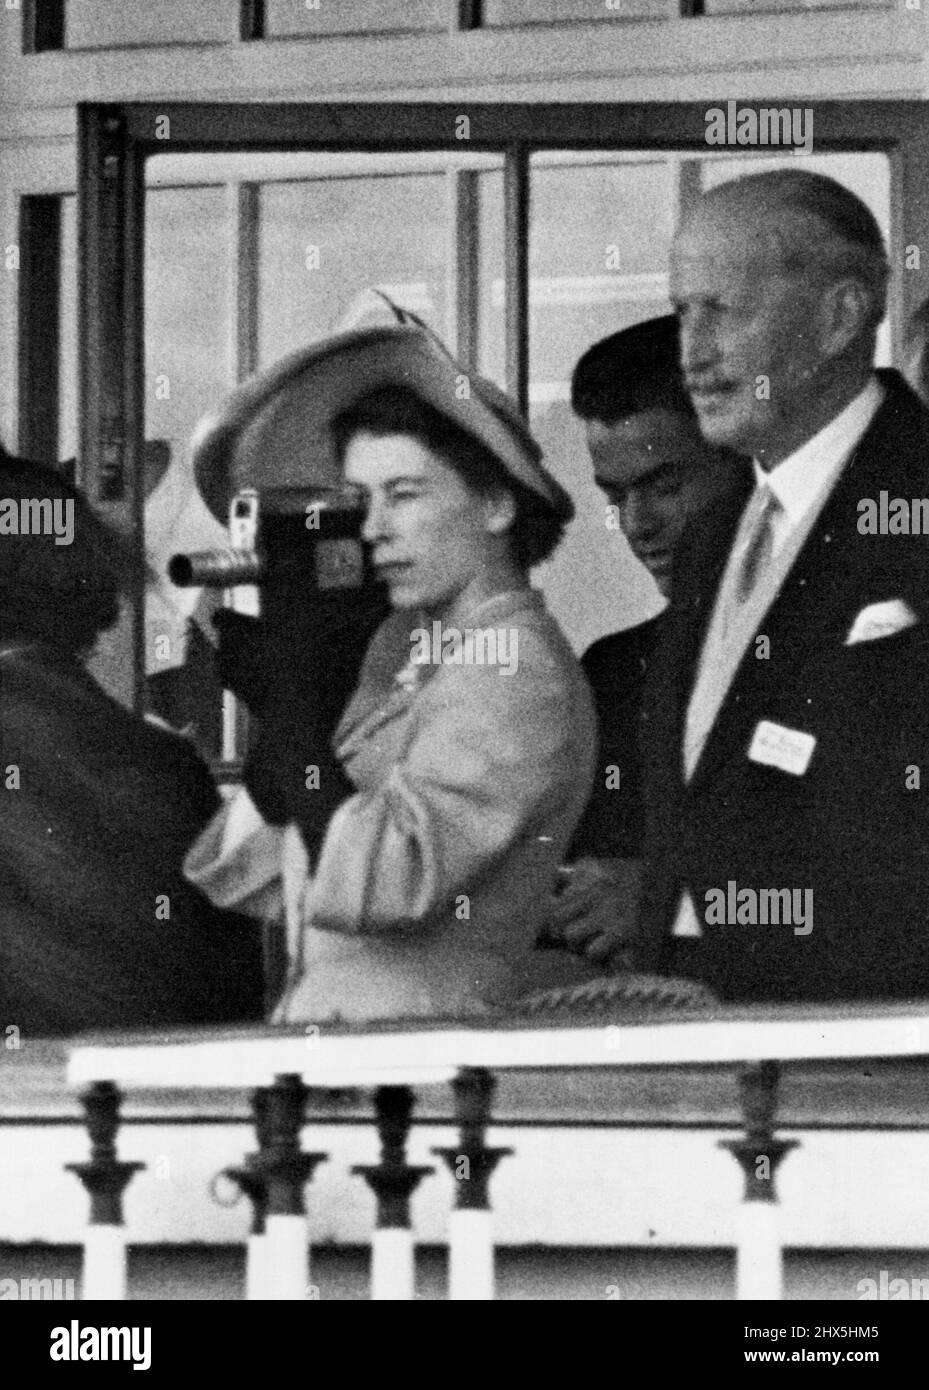 La princesse Elizabeth films la coupe d'or Ascot -- la princesse Elizabeth prend des photos de la coupe d'or Ascot avec sa caméra ciné. 14 juin 1951. (Photo de Fox photos). Banque D'Images